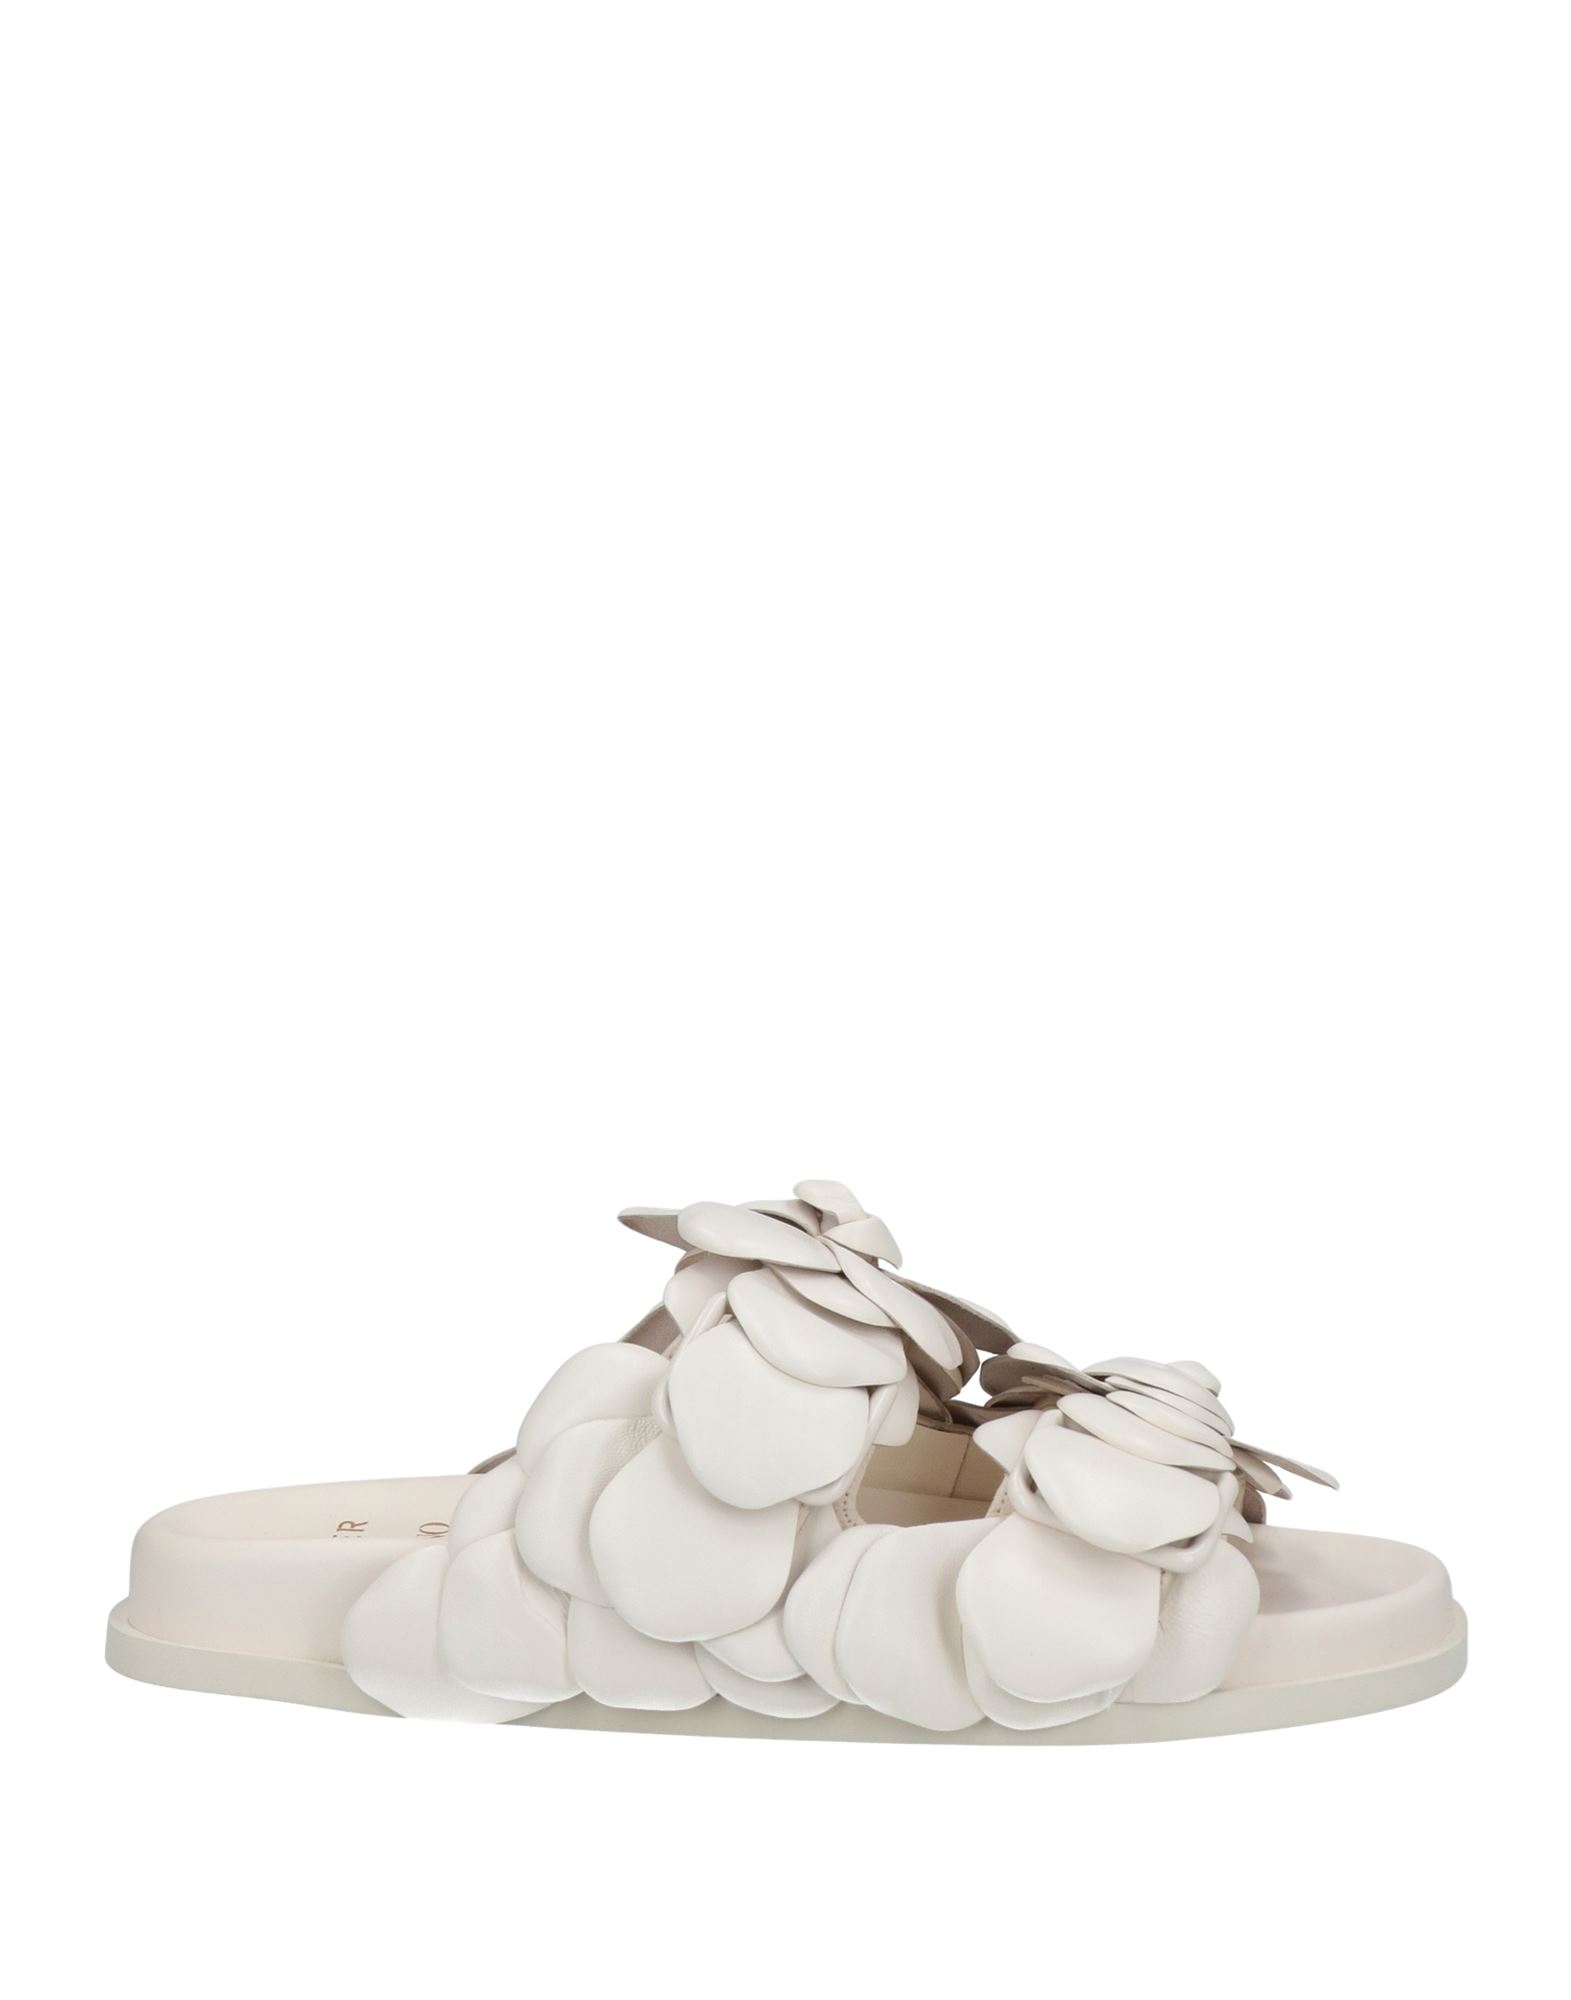 Valentino Garavani Sandals In Ivory